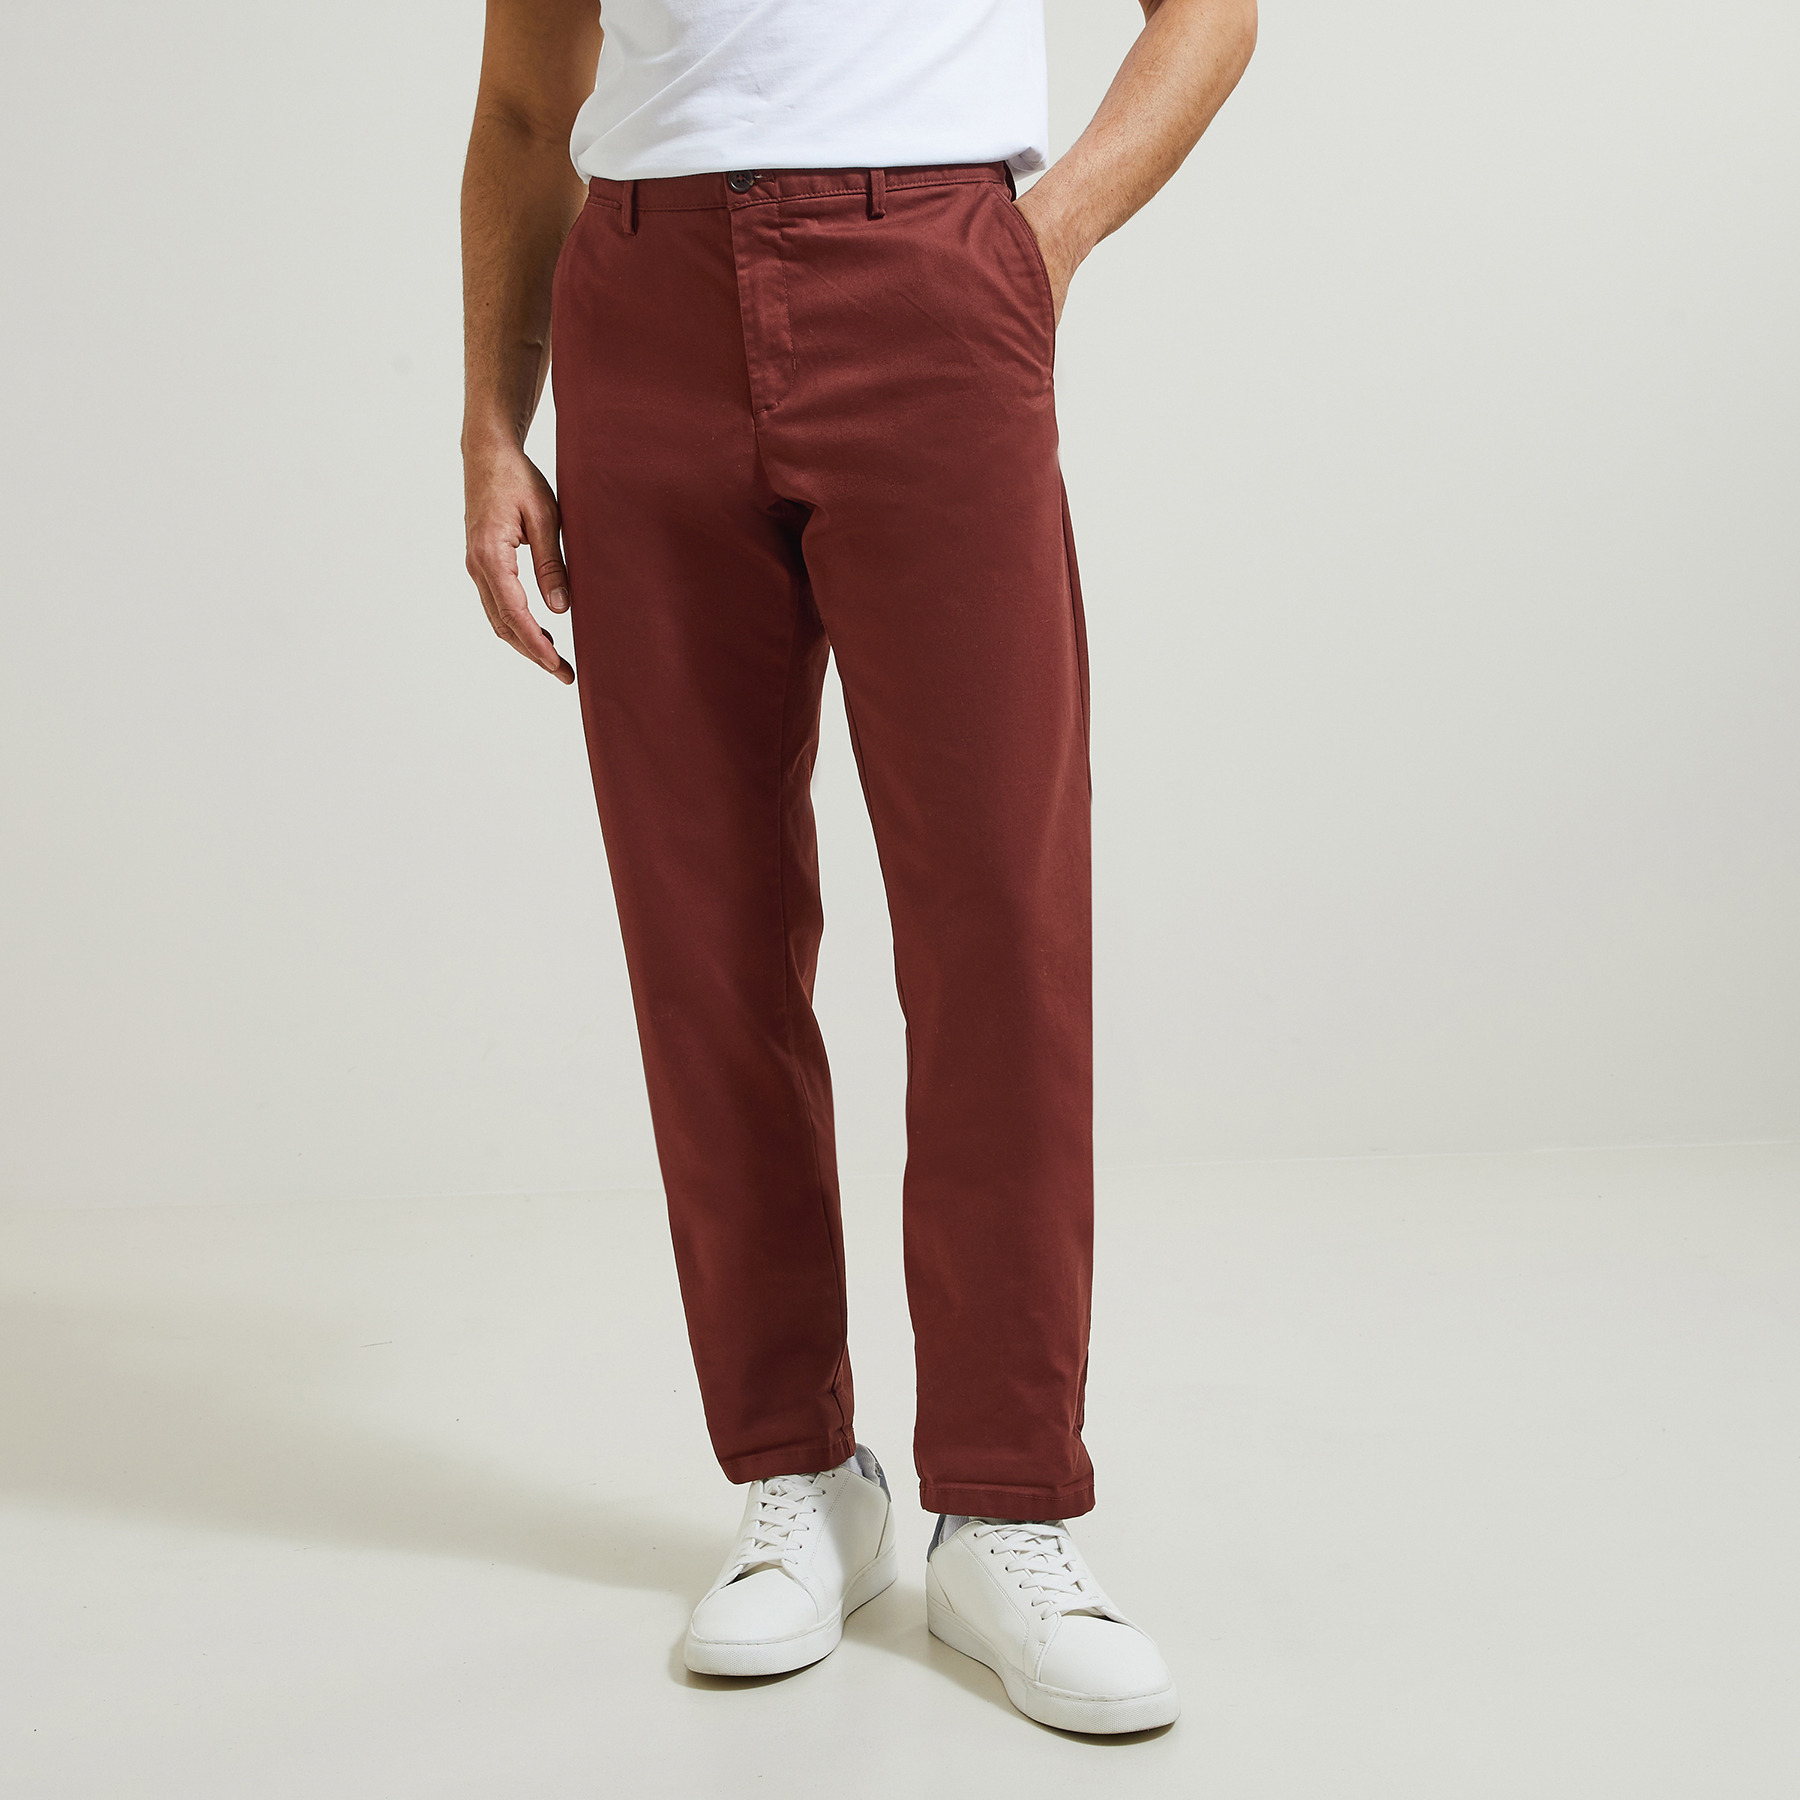 Pantalon chino regular "le parfait by JULES" Rouge 44 98% Coton, 2% Elasthanne Homme